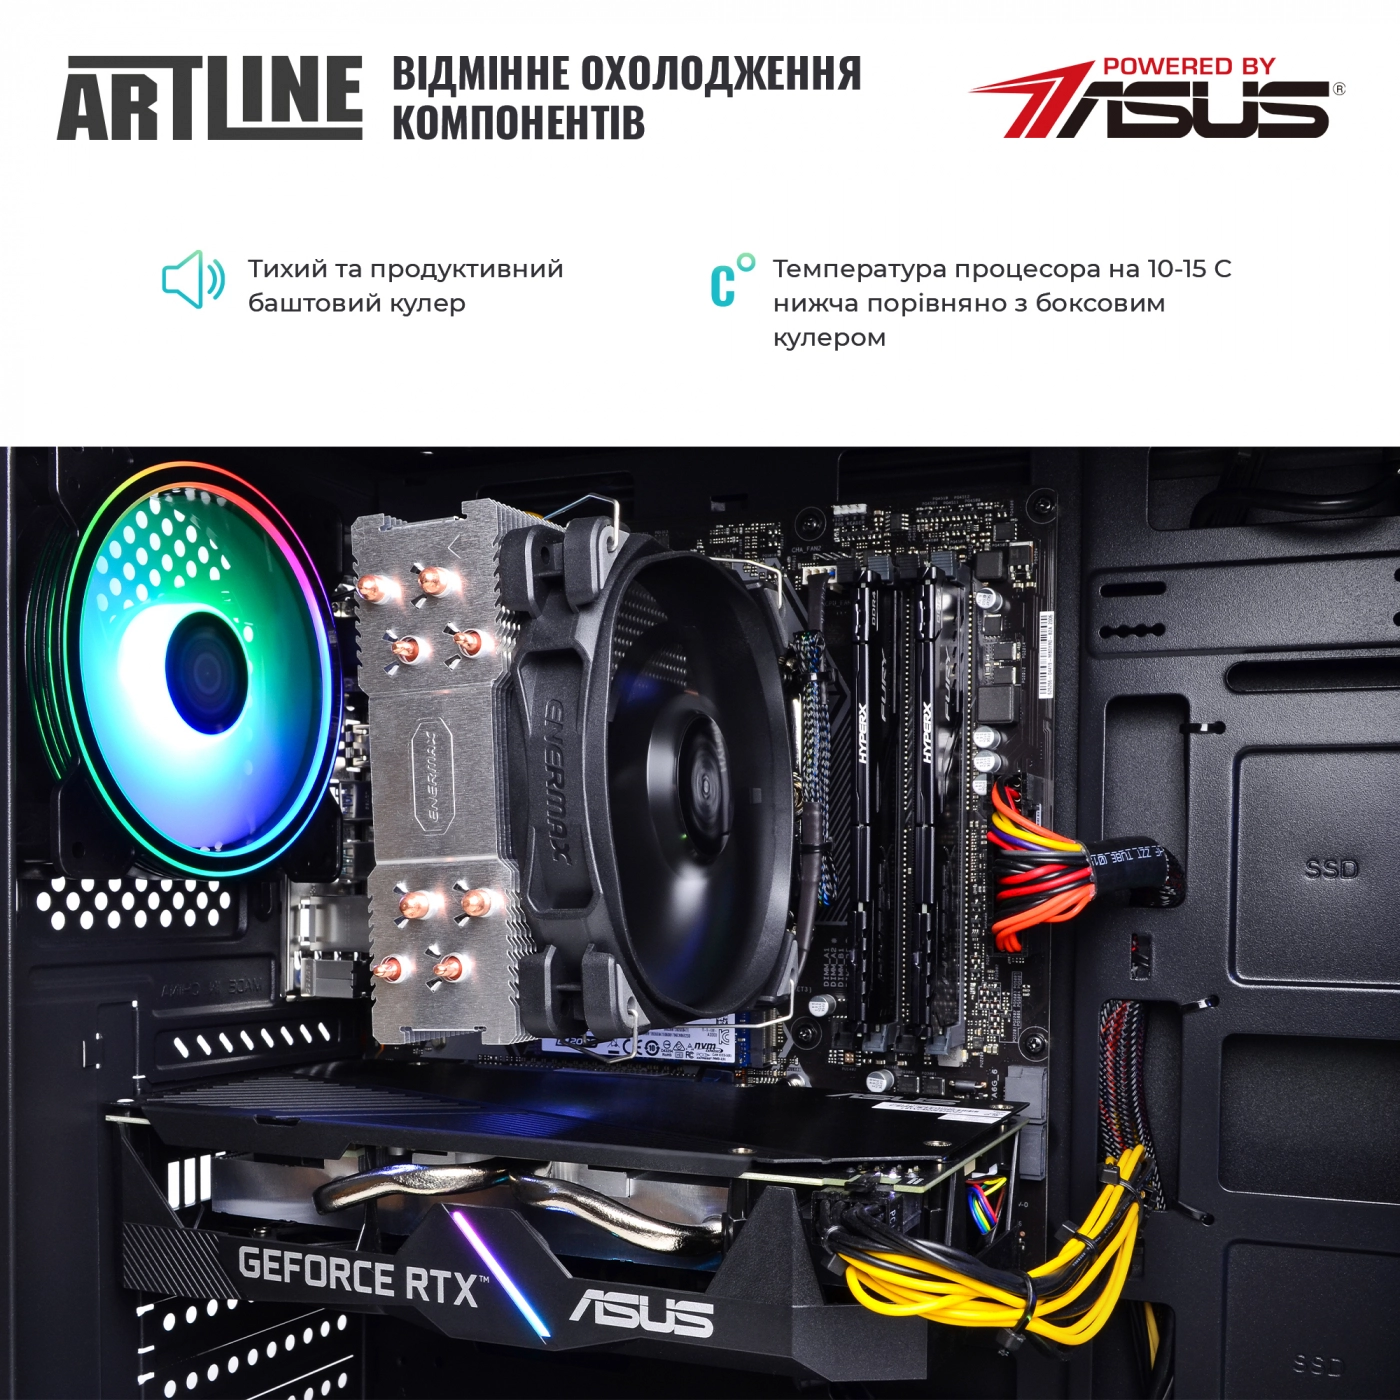 Купить Компьютер ARTLINE Gaming X81v17 - фото 7